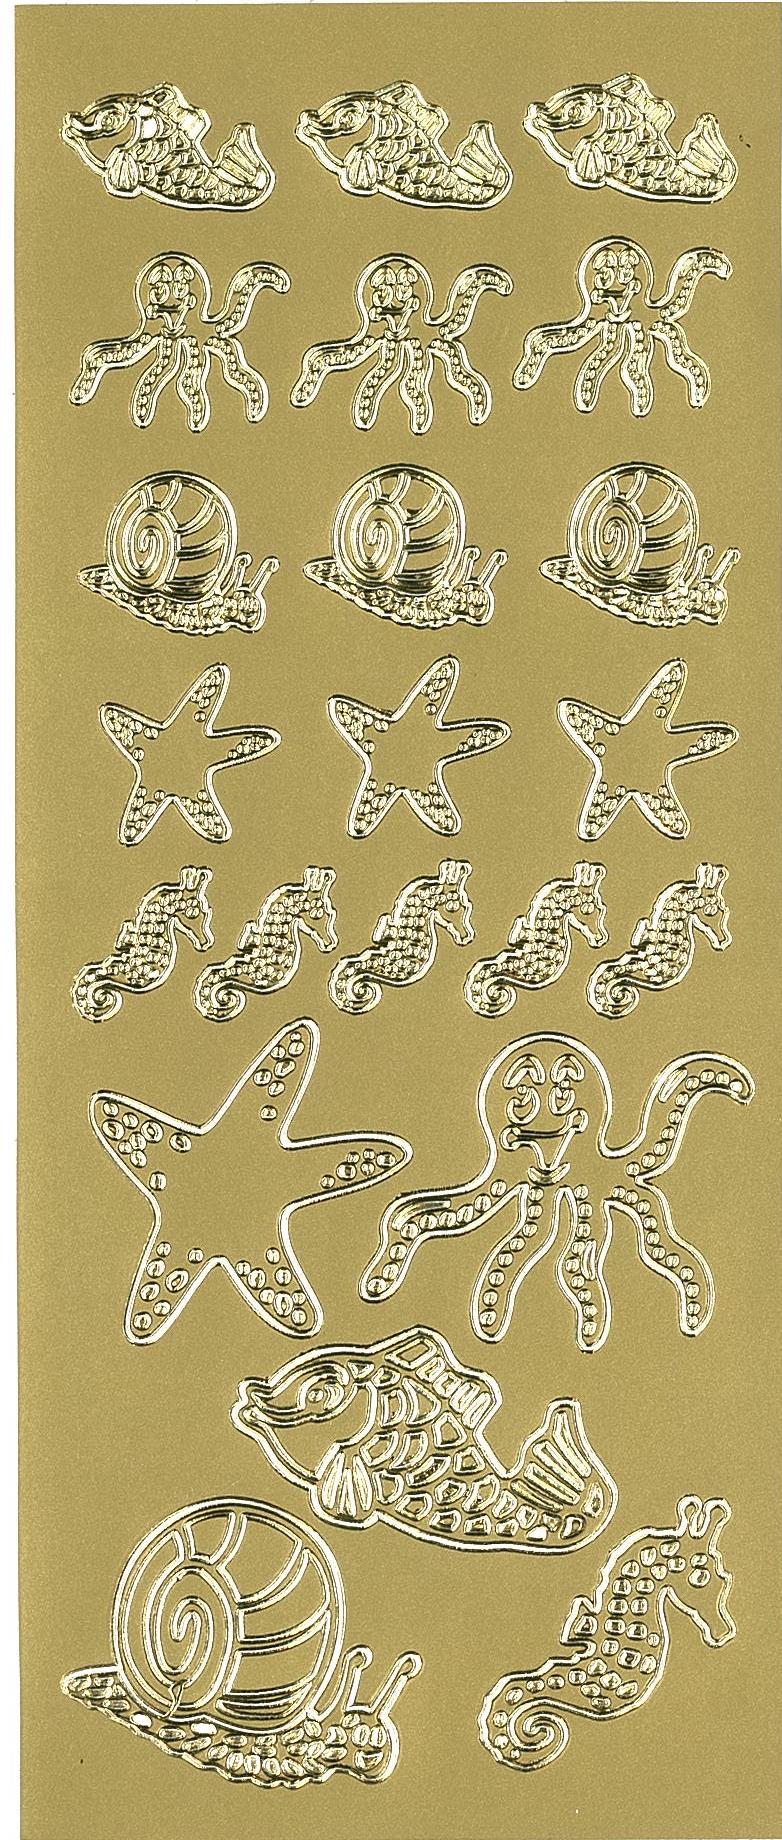 Stickers blæksprutte guld